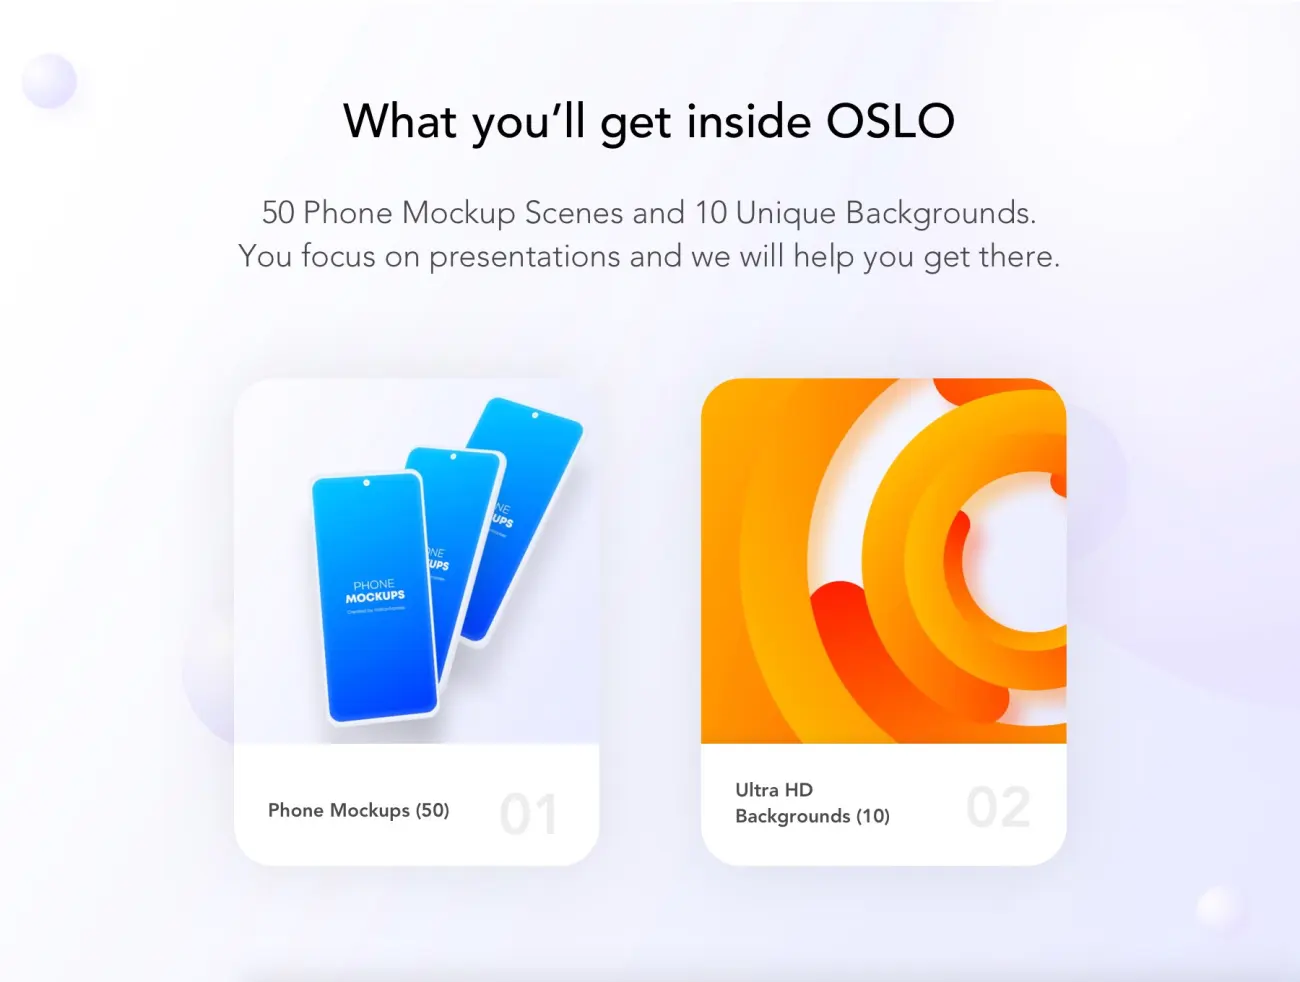 Oslo Phone Mockups Pack 手机模型样机包-UI/UX-到位啦UI